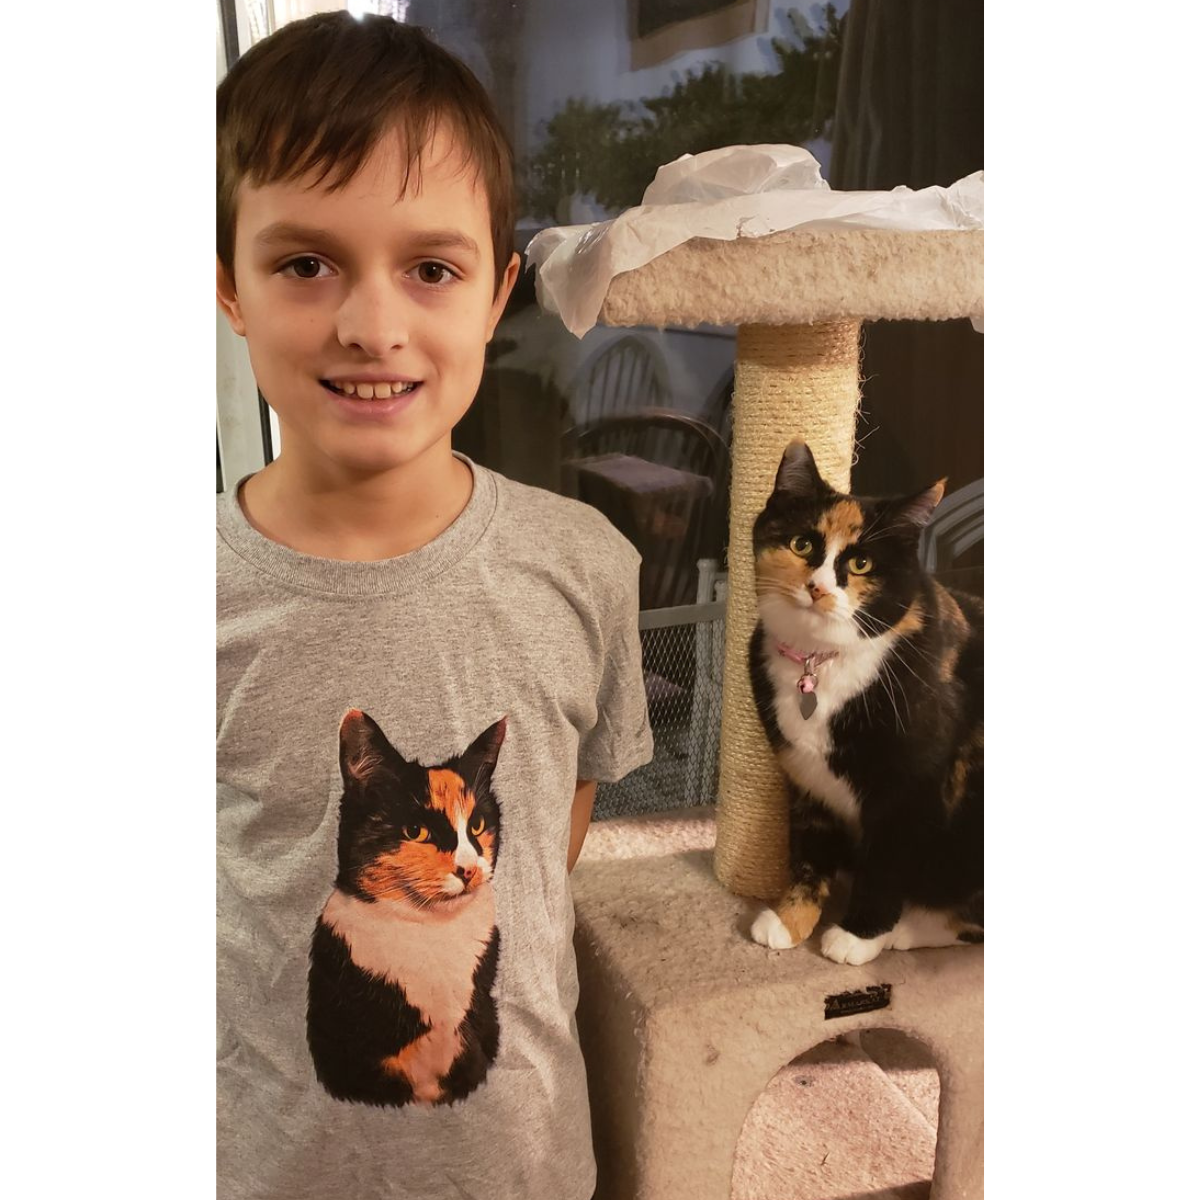 Cat PFP' Men's T-Shirt